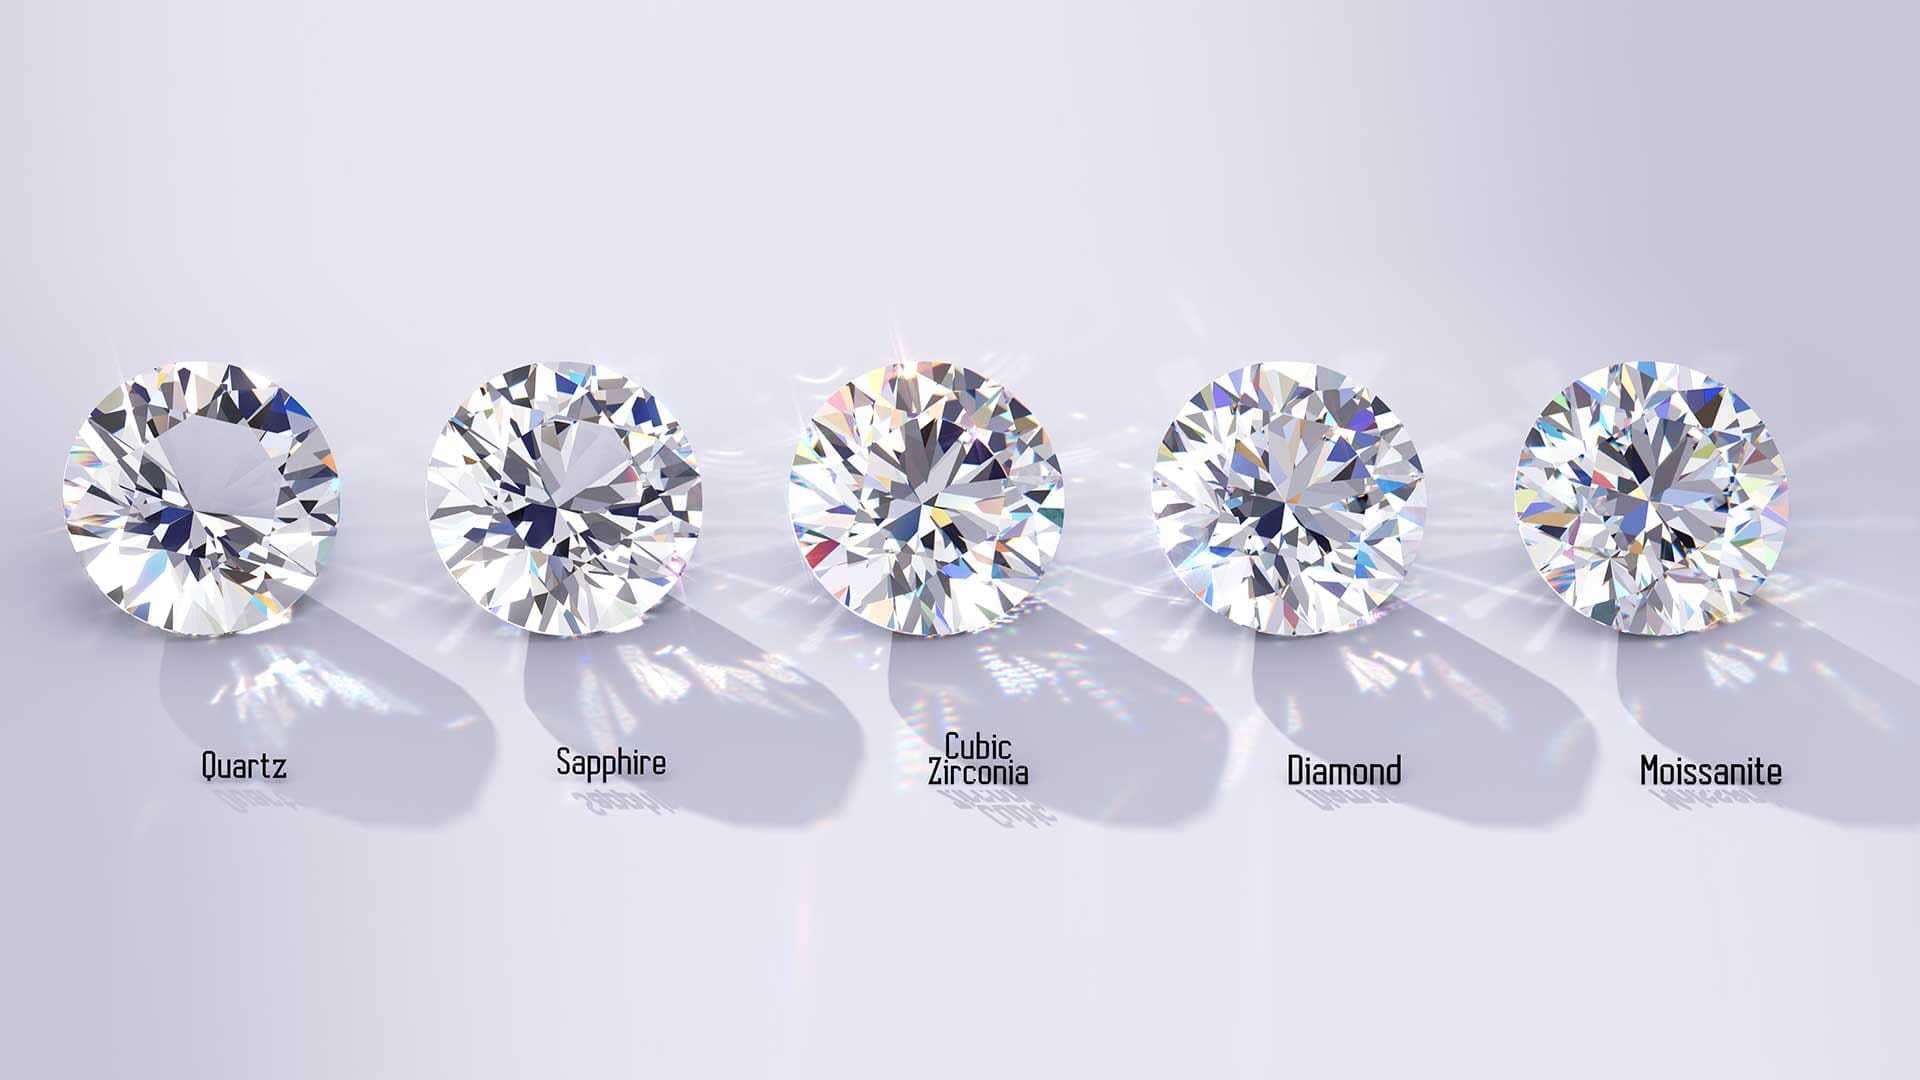 https://www.i-diamants.com/medias_upload/moxie/Difference_entre_vrai_et_faux_diamant/savoir_si_un_diamant_est_vrai_ou_faux.jpg